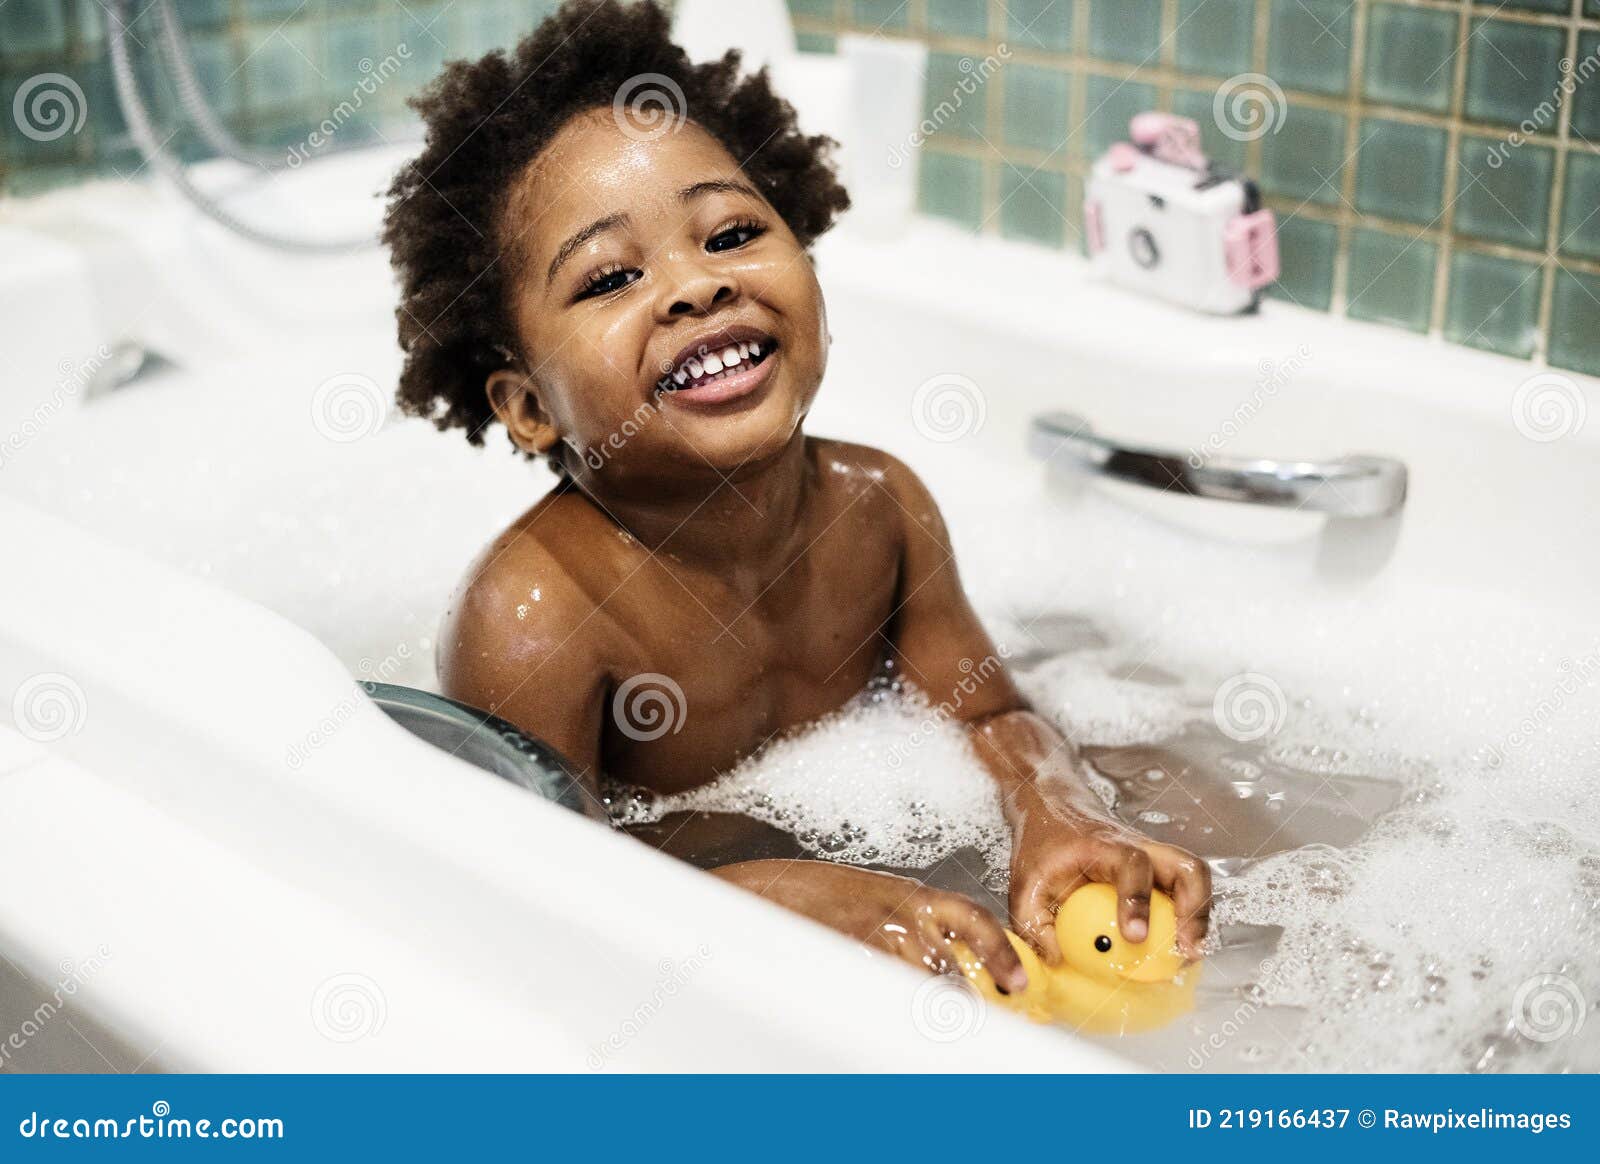 african descent kid enjoying bath tub